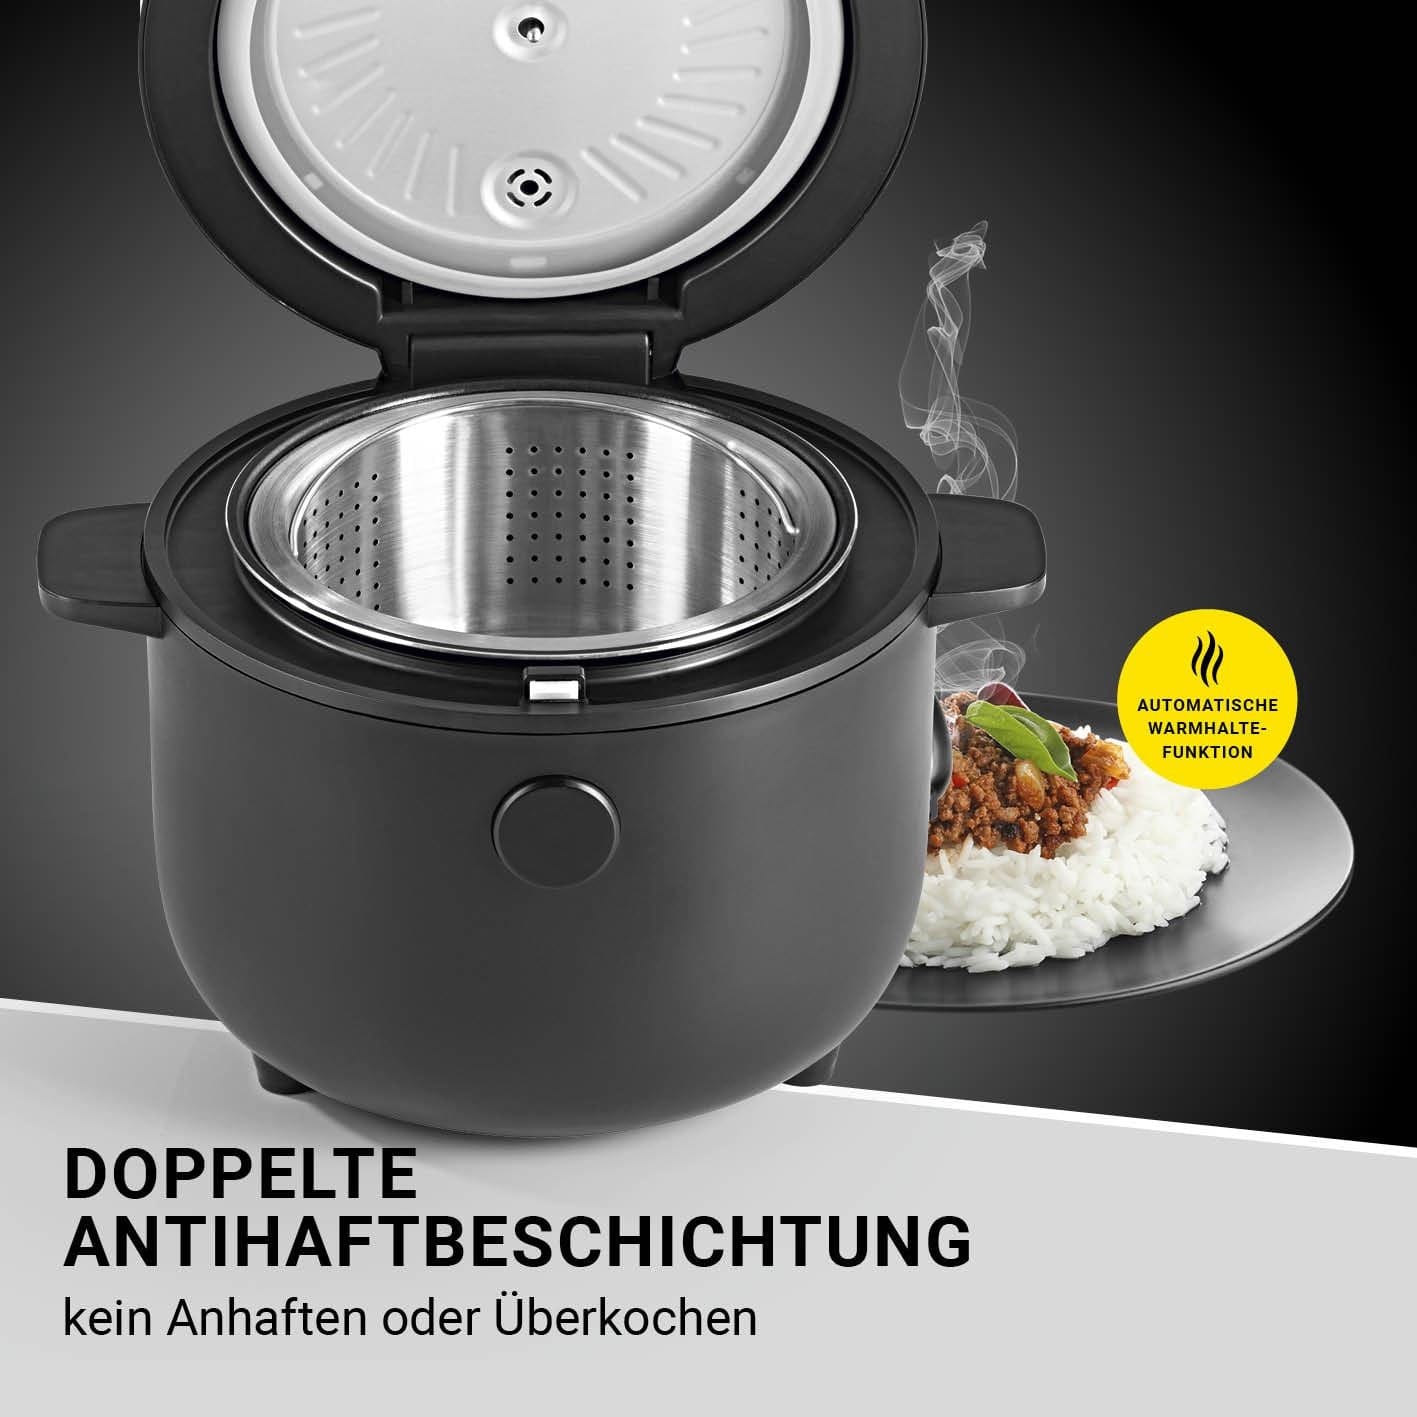 N8WERK Digital Rice Cooker With Steam Insert - Black, 400W